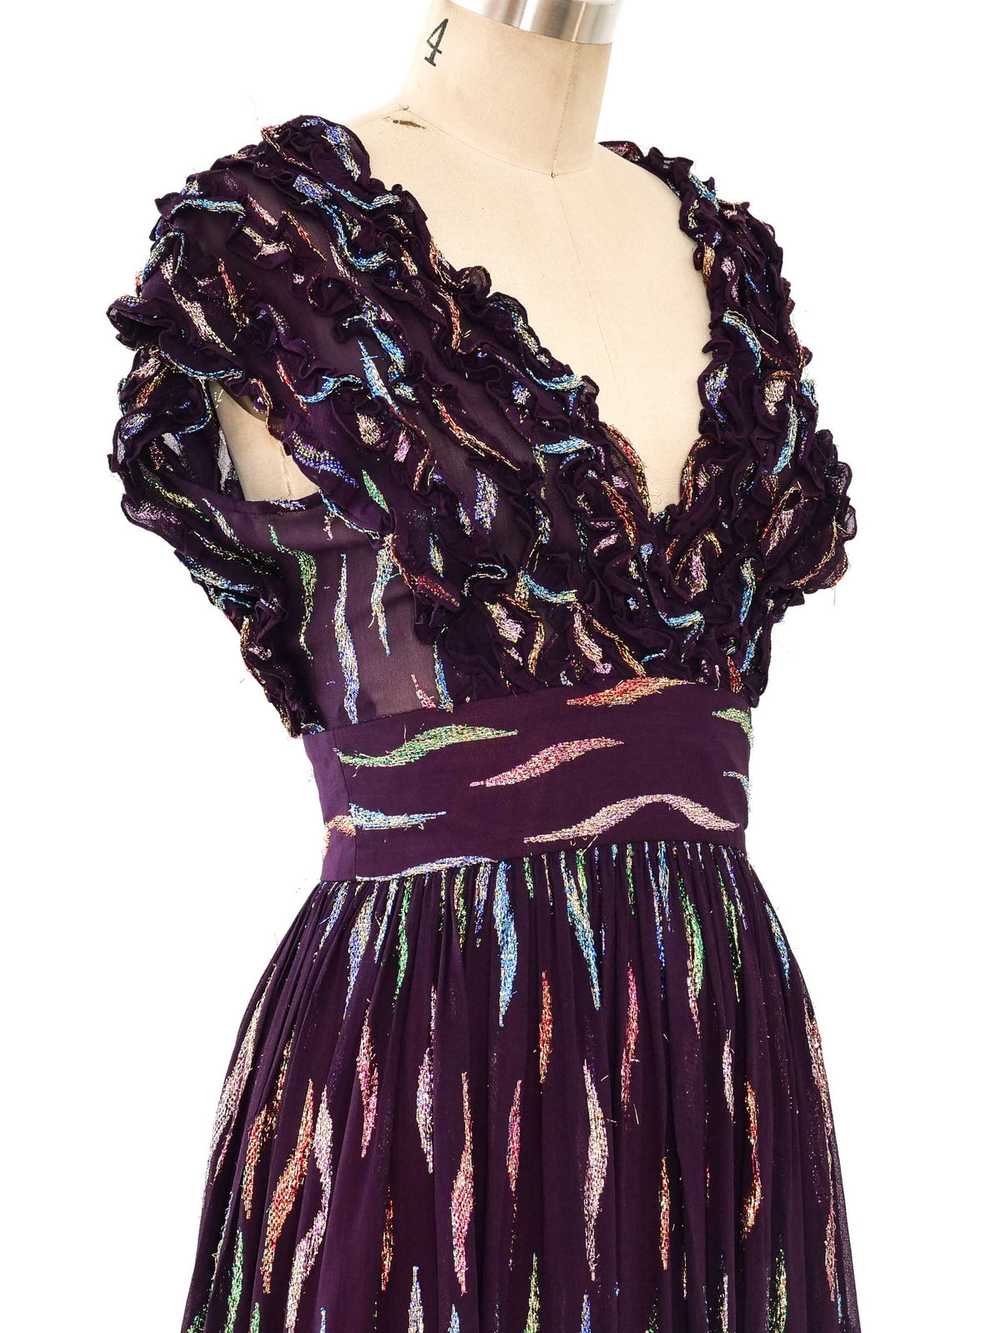 Quorum Metallic Ruffle Dress - image 4